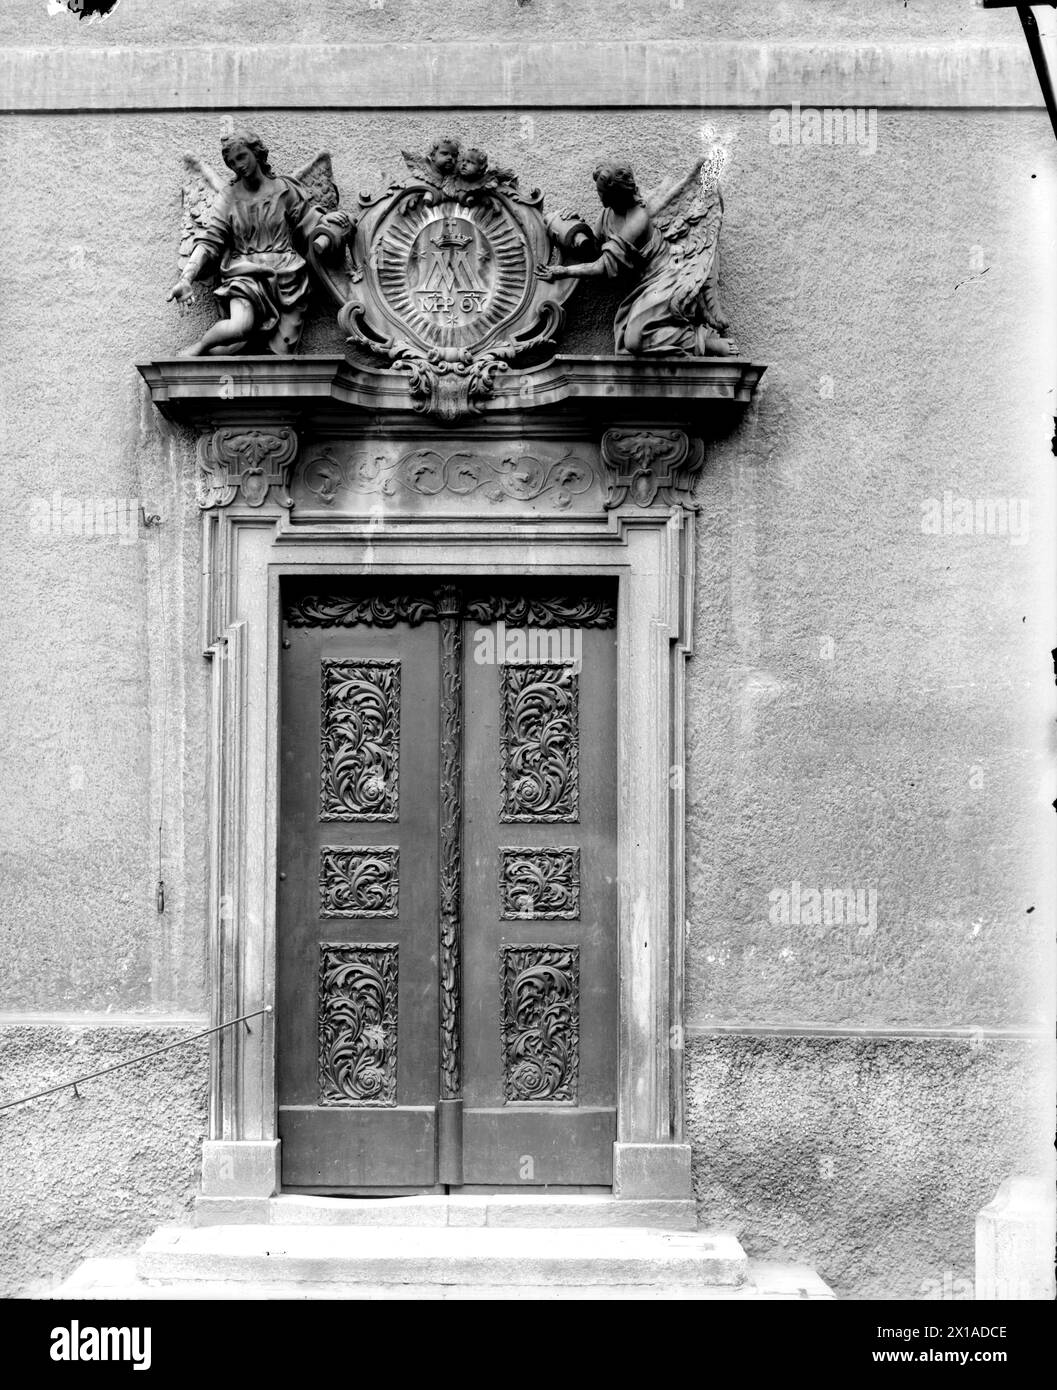 Vienna 8, Piaristenkloster (Monastero dei Piaristi), portale con porte intagliate e ricco supraporte (monogramma della Vergine Maria), 1899 - 18990101 PD0520 - Rechteinfo: Rights Managed (RM) Foto Stock